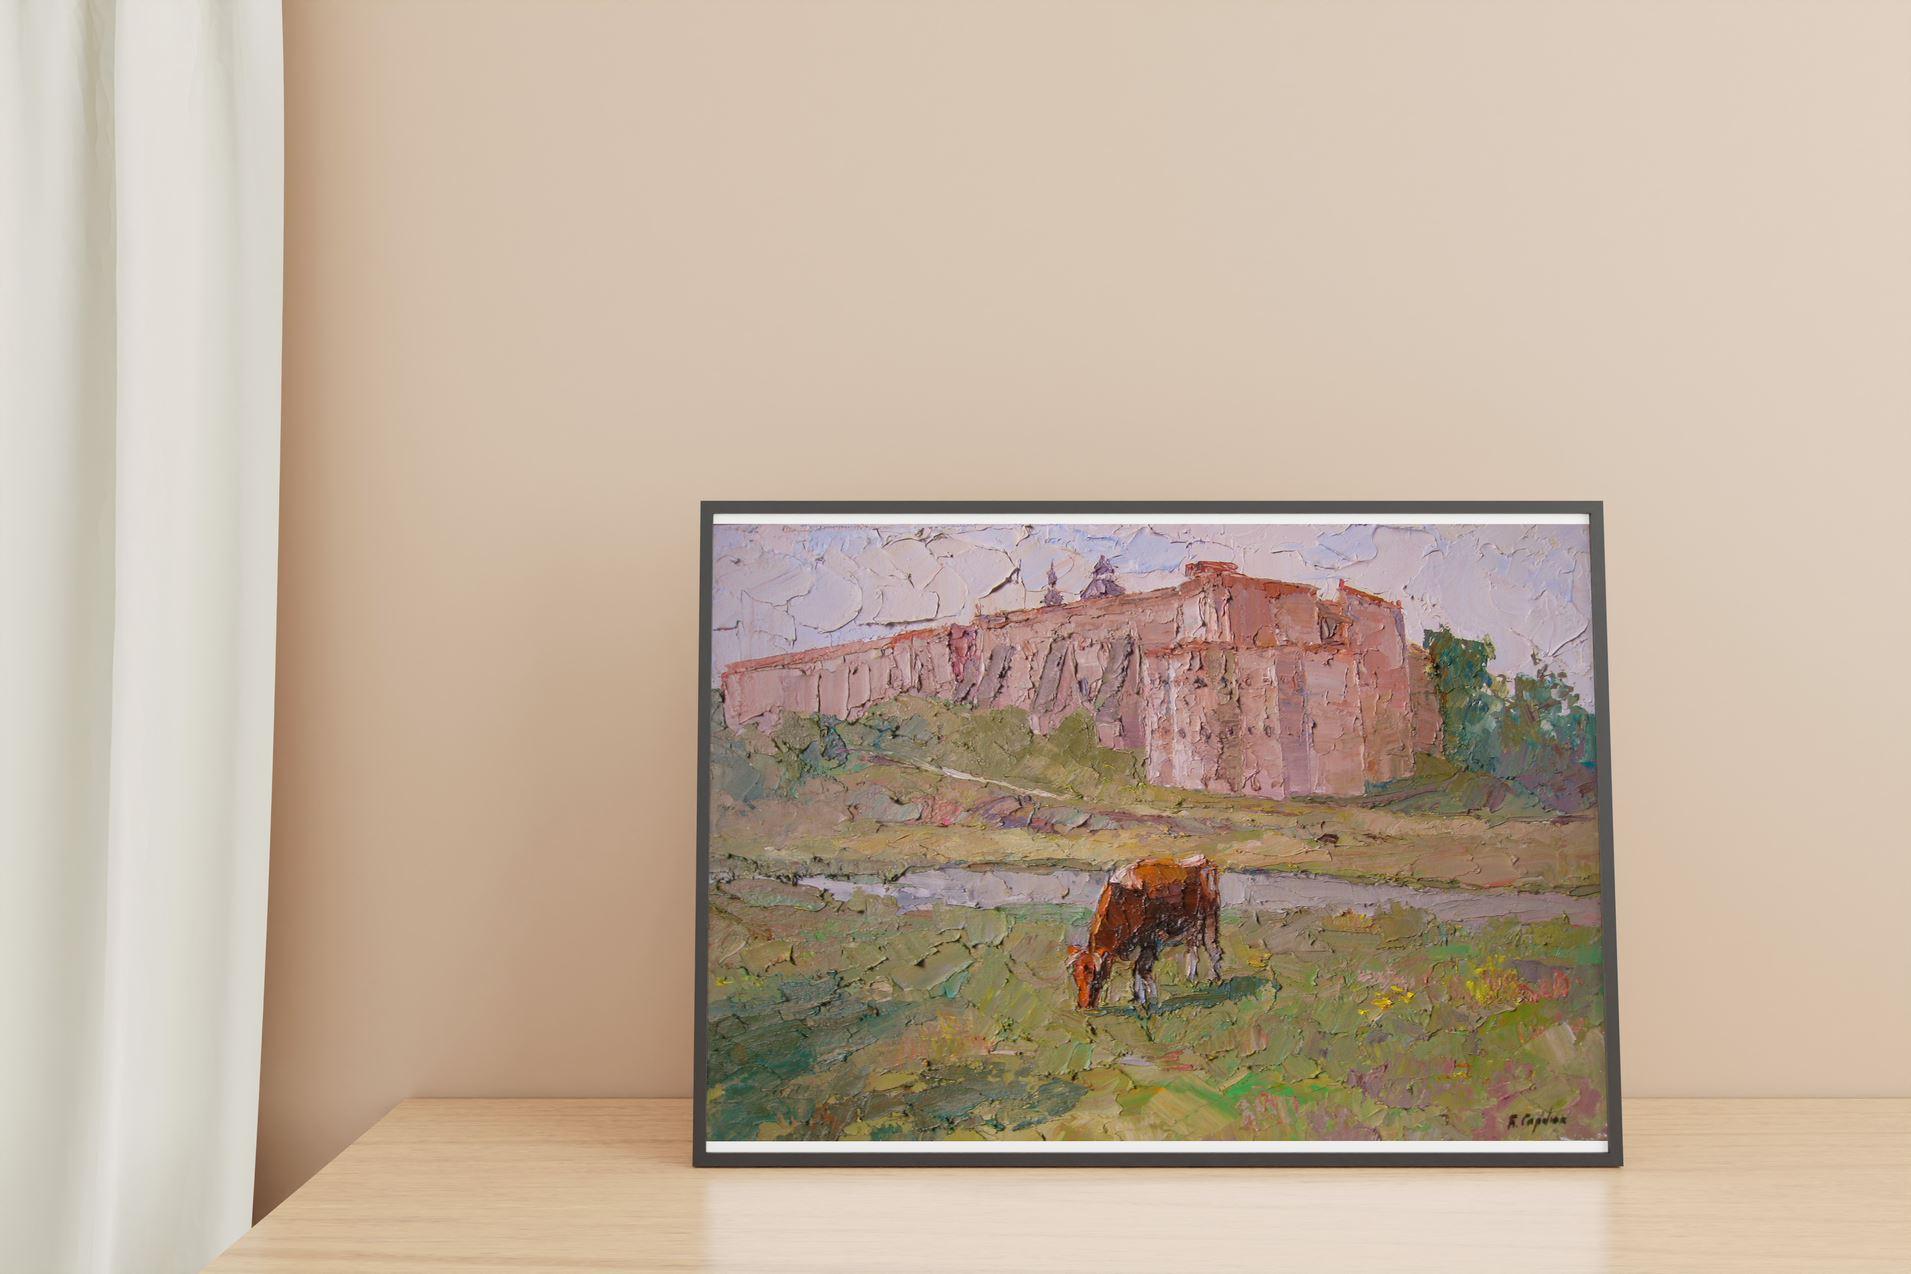 Artistics : Boris Serdyuk 
Oeuvre : Peinture à l'huile originale, œuvre d'art faite à la main, unique en son genre. 
Médium : Huile sur toile
Style : Impressionnisme
Année : 2020
Titre : Journée d'été
Taille : 16.5